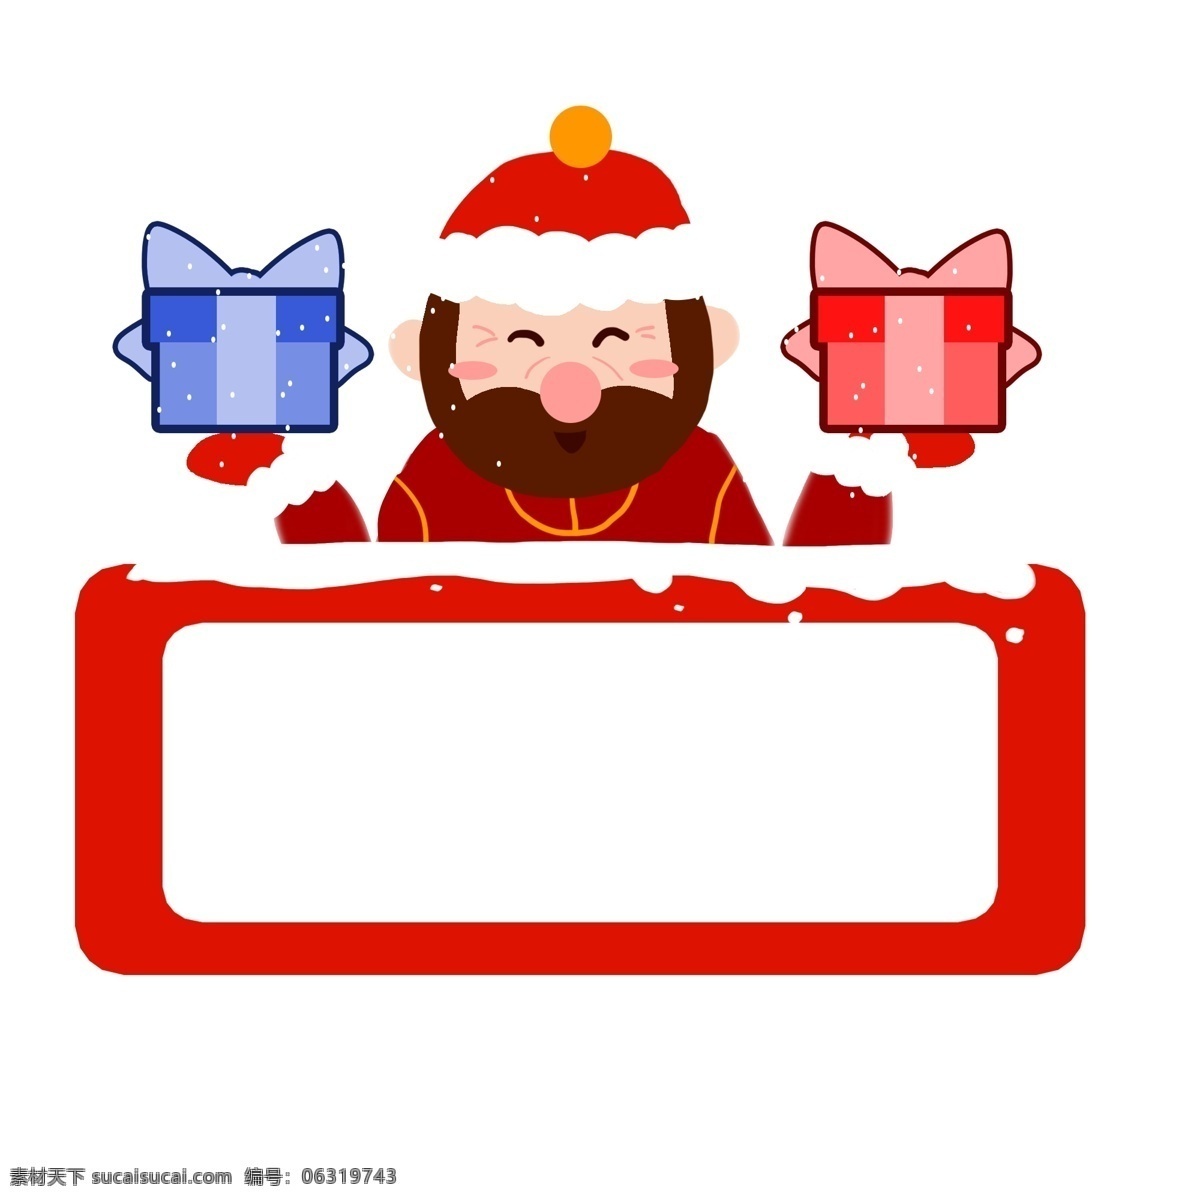 新年 礼盒 边框 插画 新年礼盒边框 手绘礼盒边框 红色的帽子 红色 落雪 漂亮